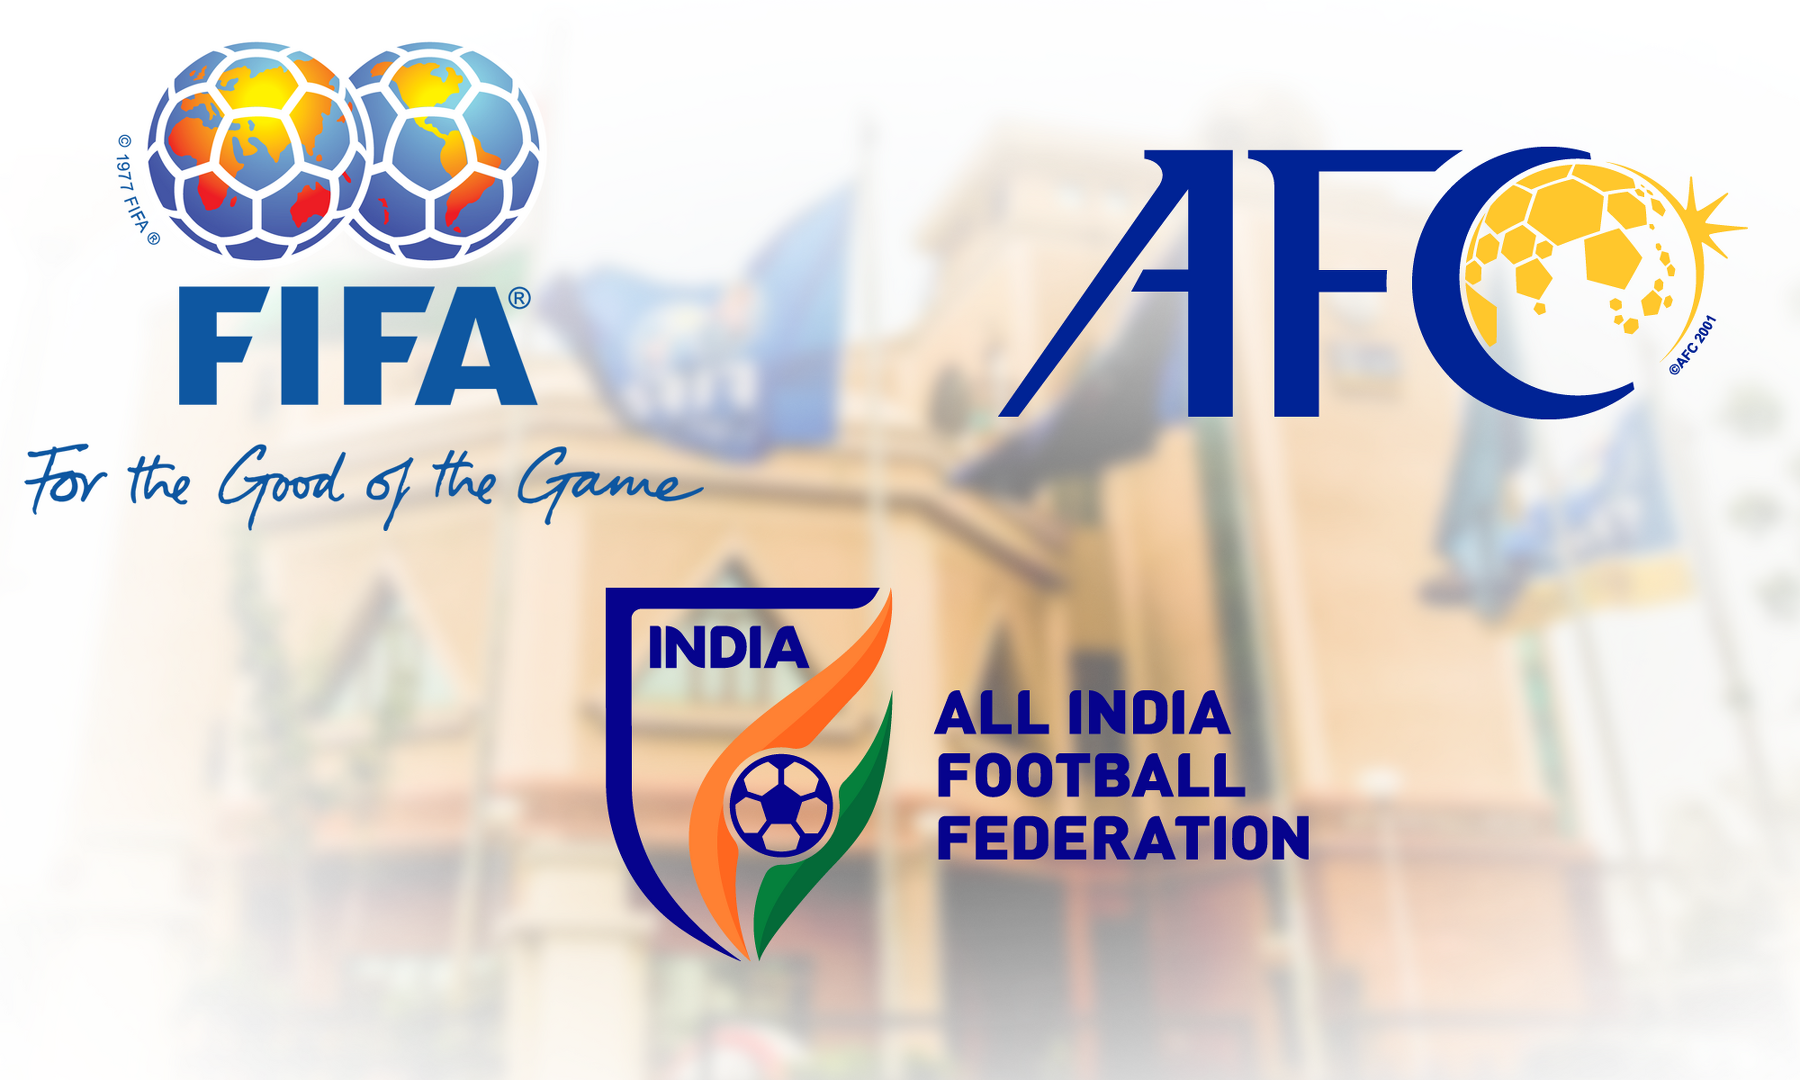 AIFF AFC FIFA